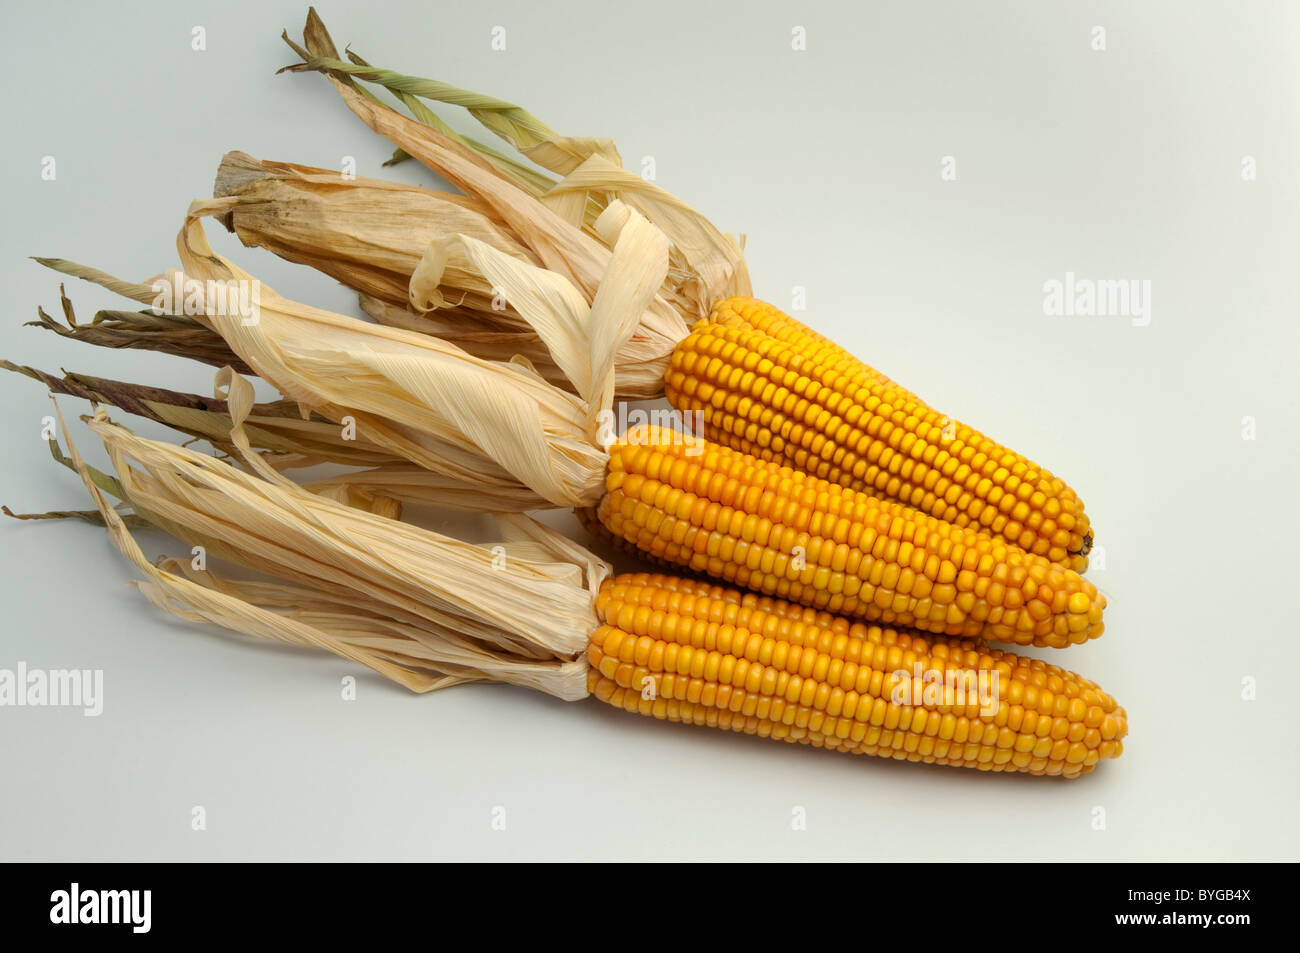 El maíz, el maíz (Zea mays). Las mazorcas maduras. Studio picture contra un fondo blanco. Foto de stock